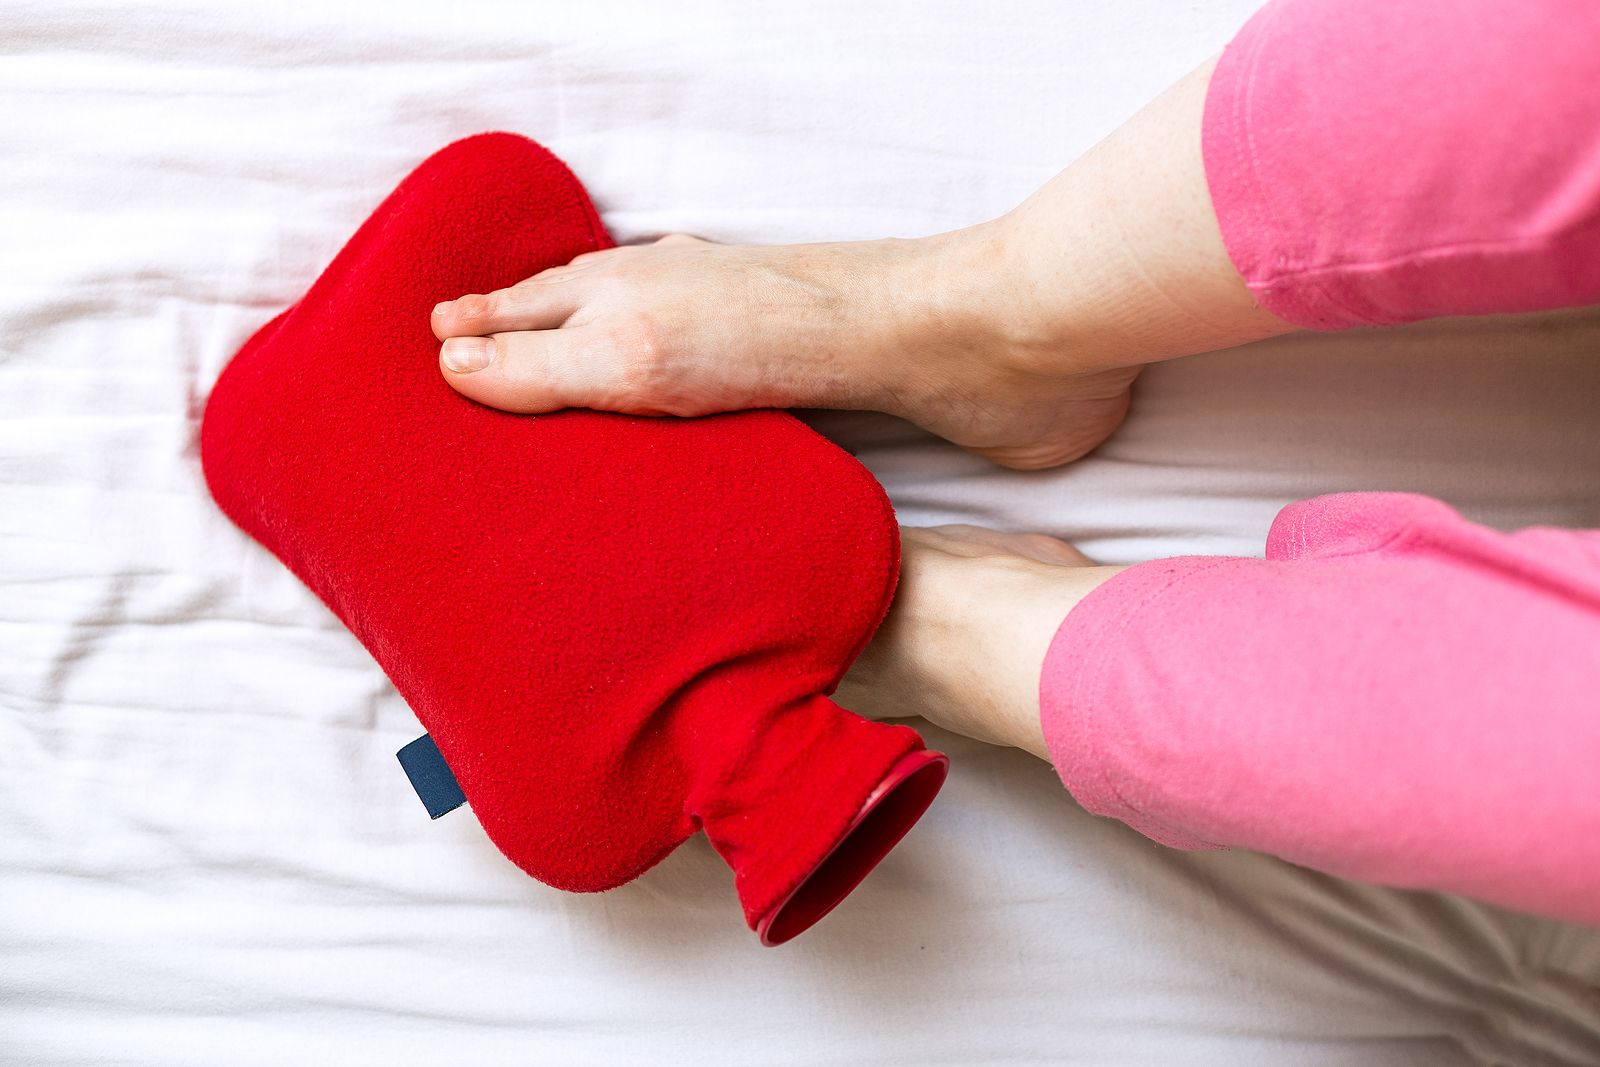 Problemas y lesiones que se producen al tener los pies fríos